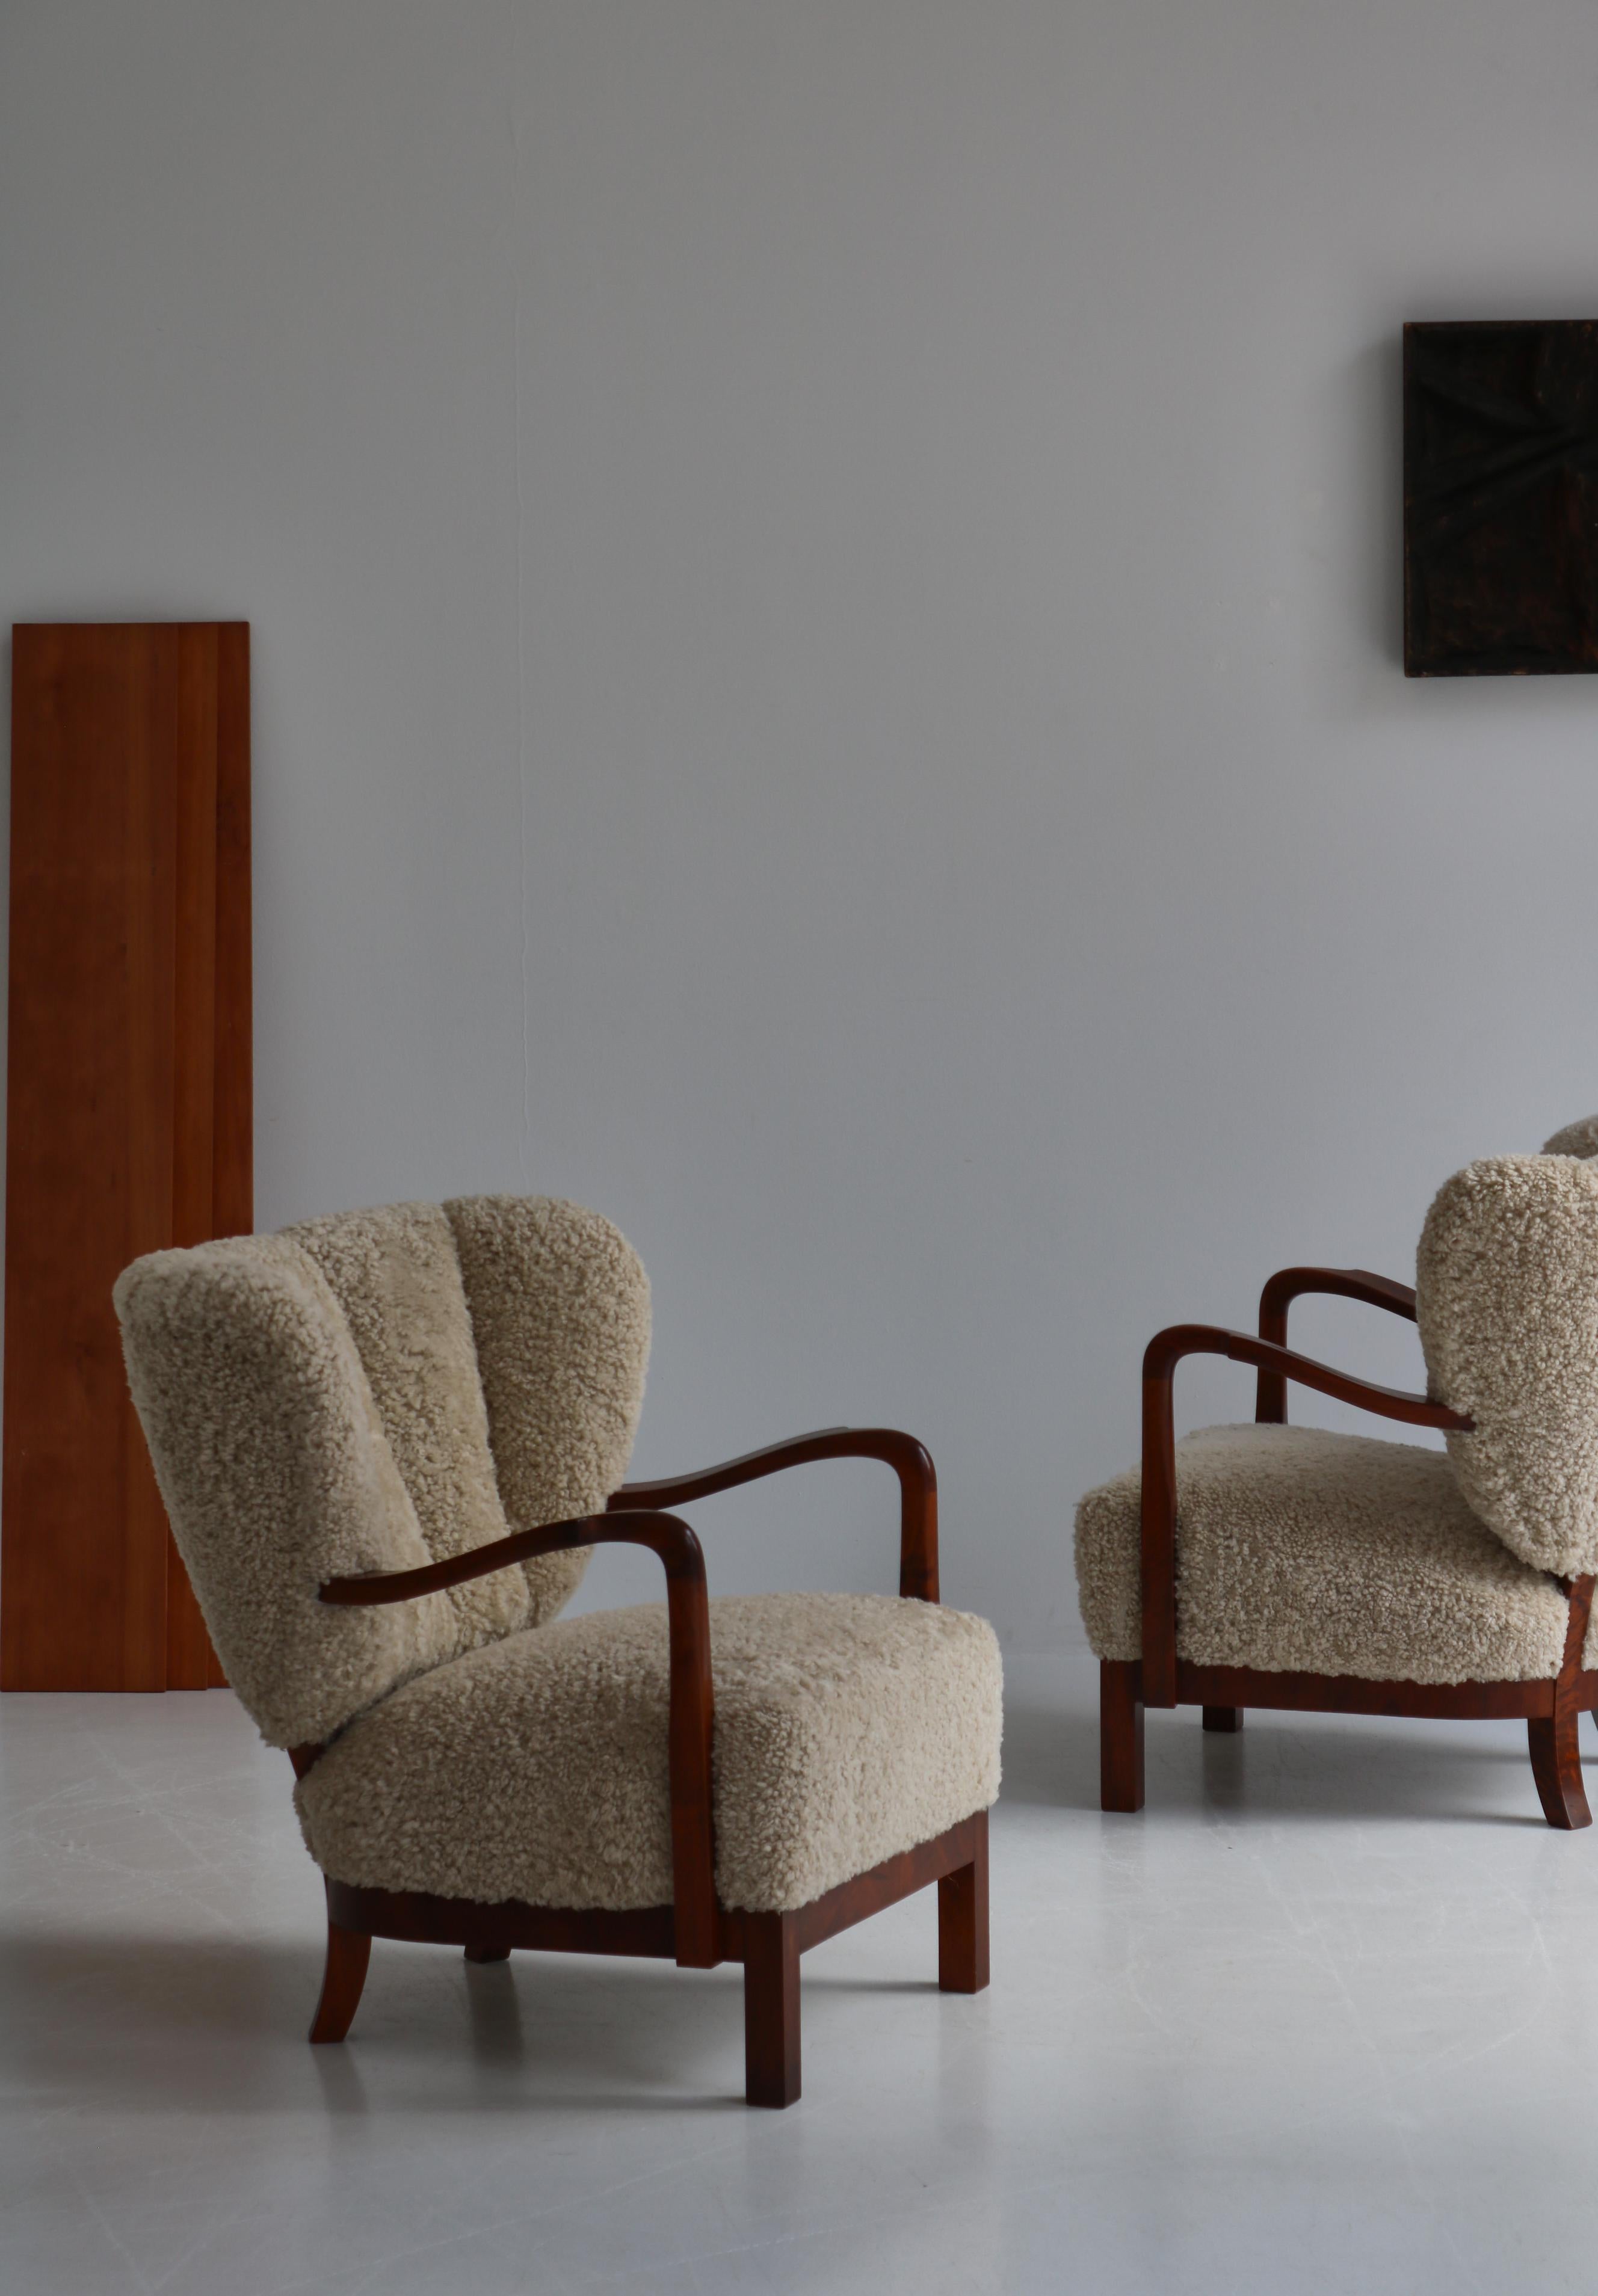 Absolument incroyable paire de fauteuils The Modern Scandinavian des années 1930 attribués à l'architecte danois Viggo Boesen. Les chaises sont fabriquées en bois de noyer et ont été recouvertes d'une magnifique peau de mouton naturelle. Ils ont